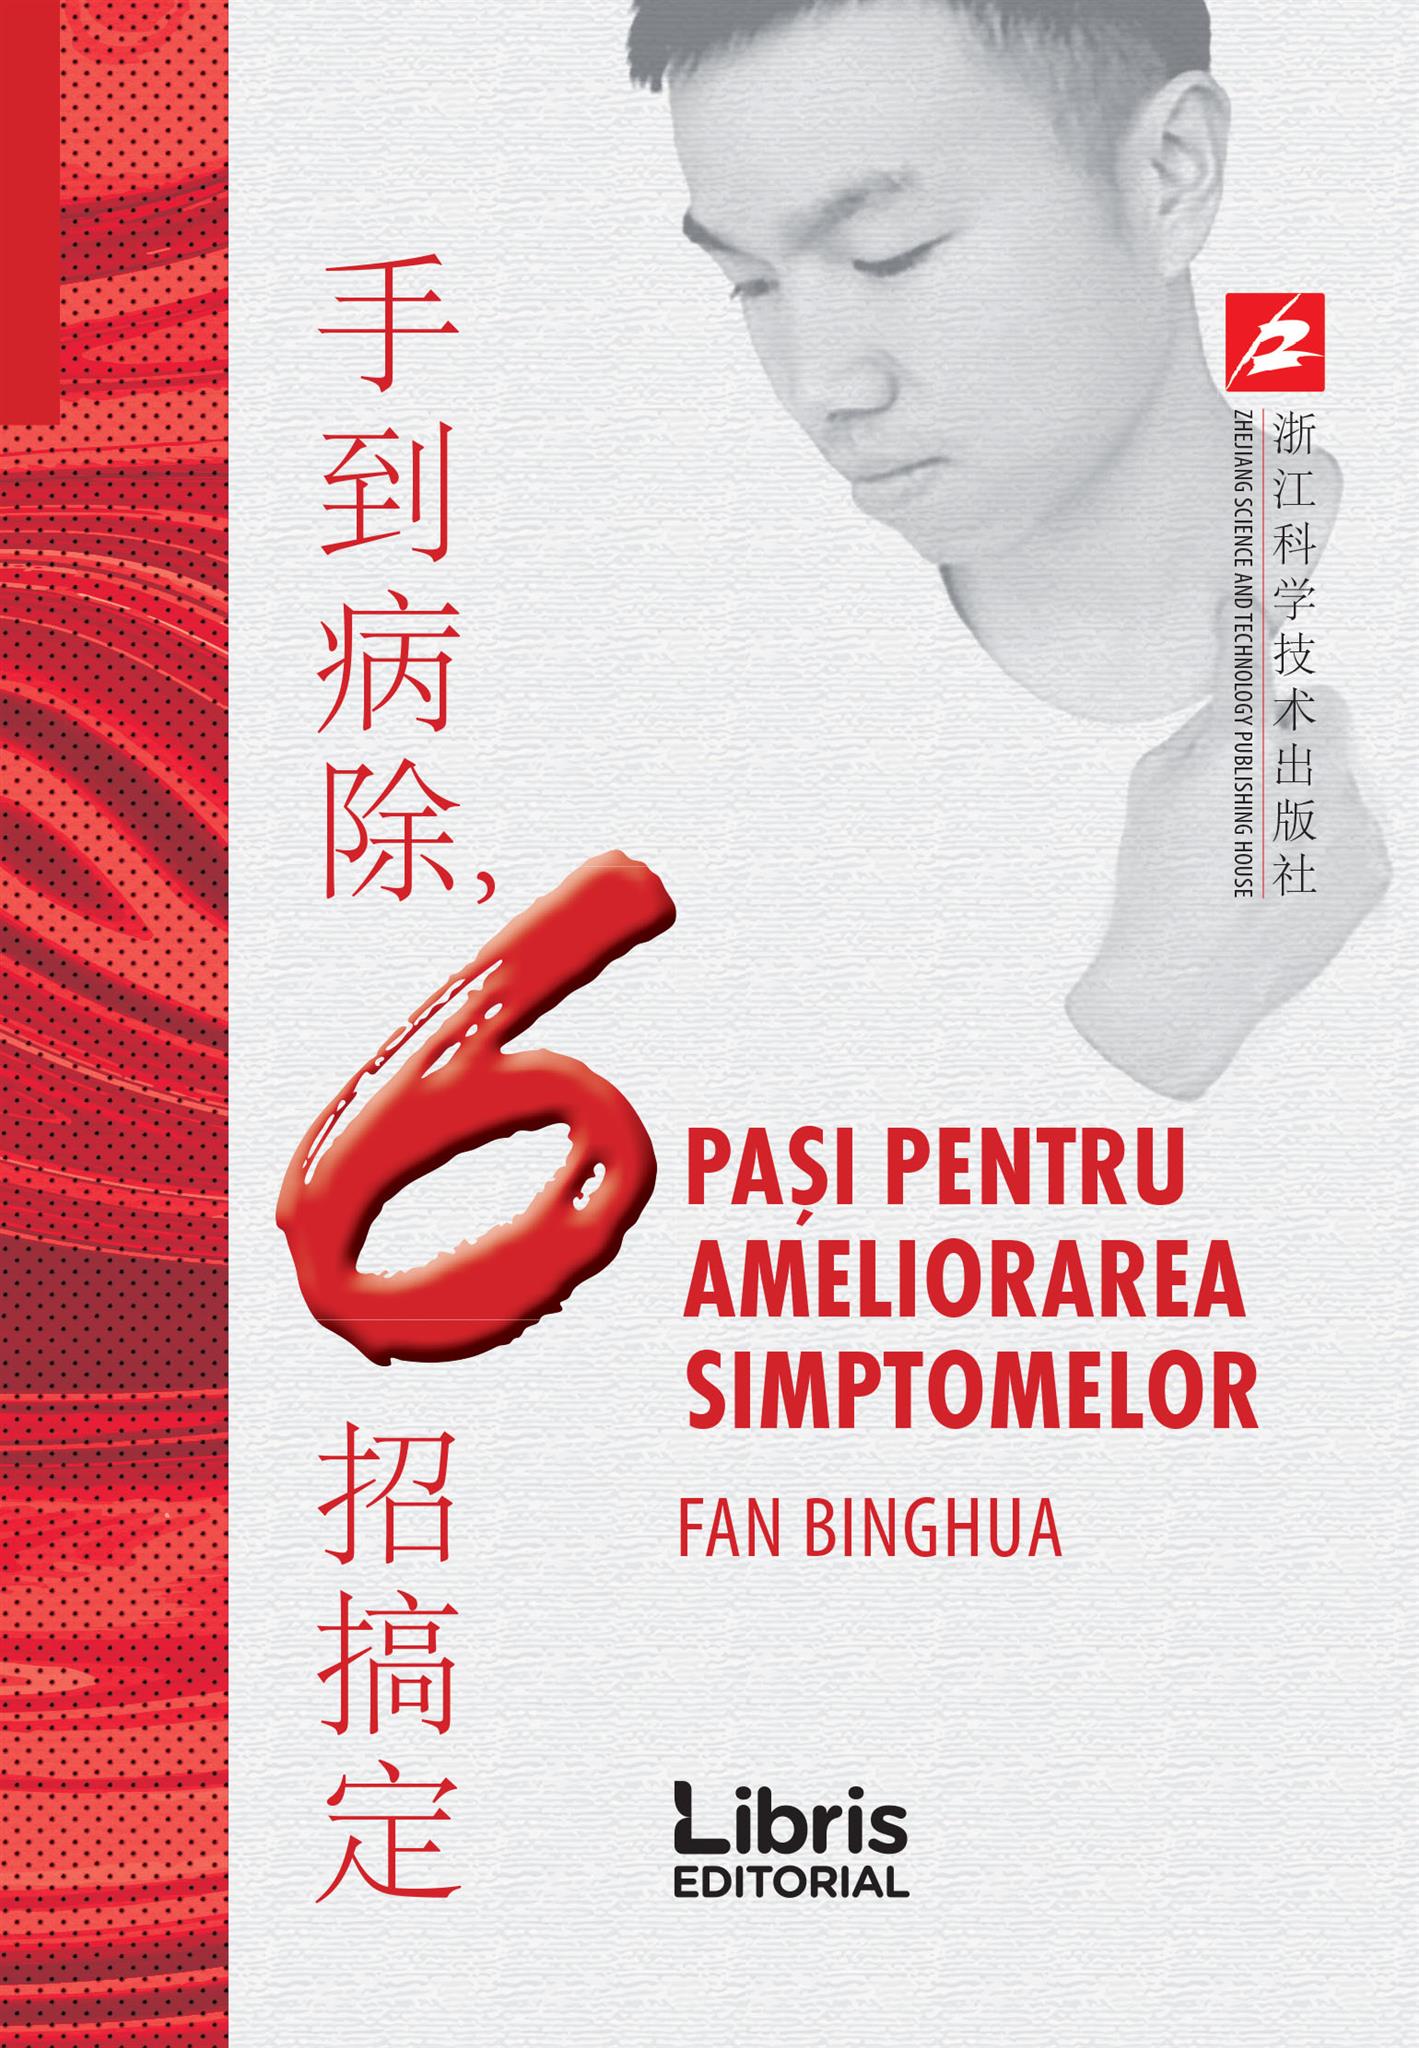 6 pasi pentru ameliorarea simptomelor | Fan Binghua carturesti.ro imagine 2022